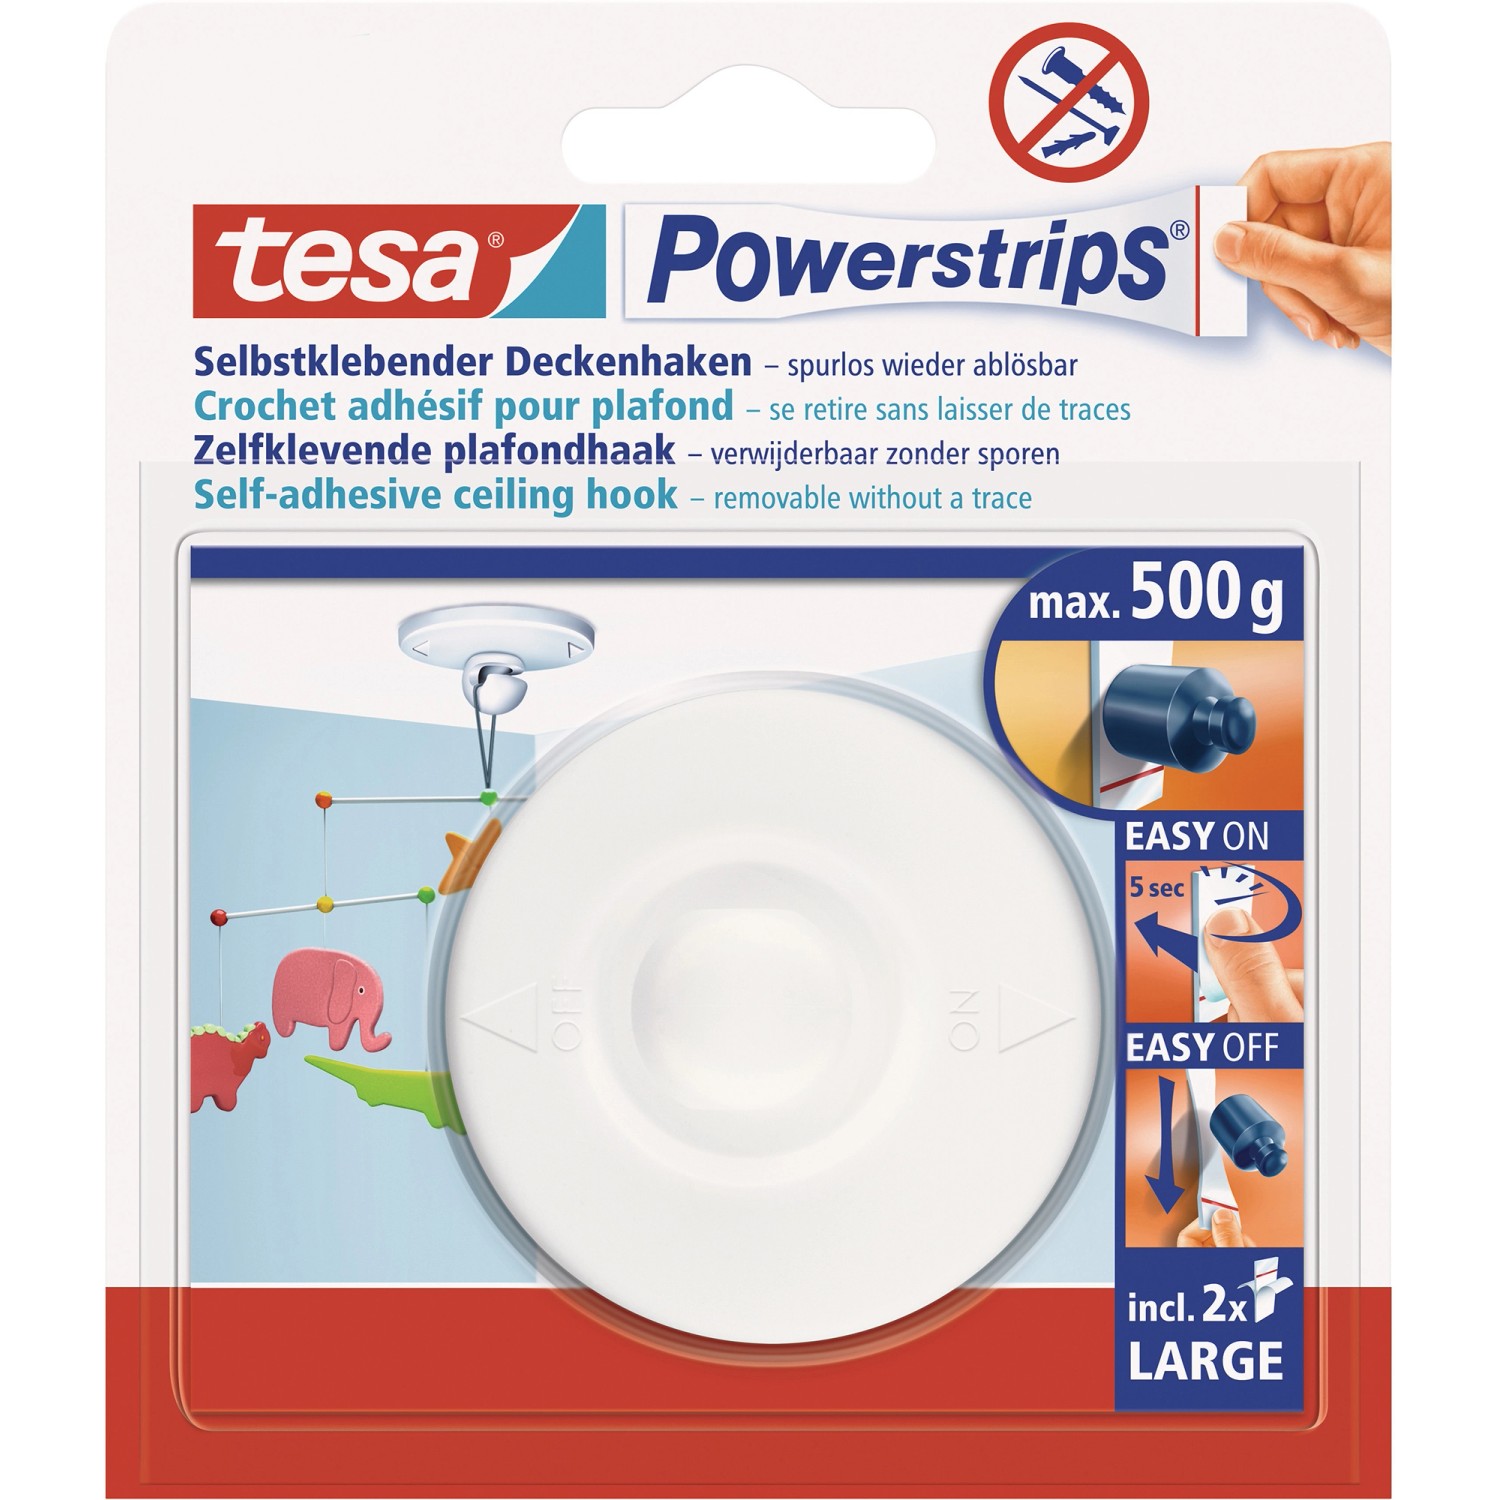 Tesa Powerstrips Deckenhaken Weiß mit 2 x Powerstrips Large